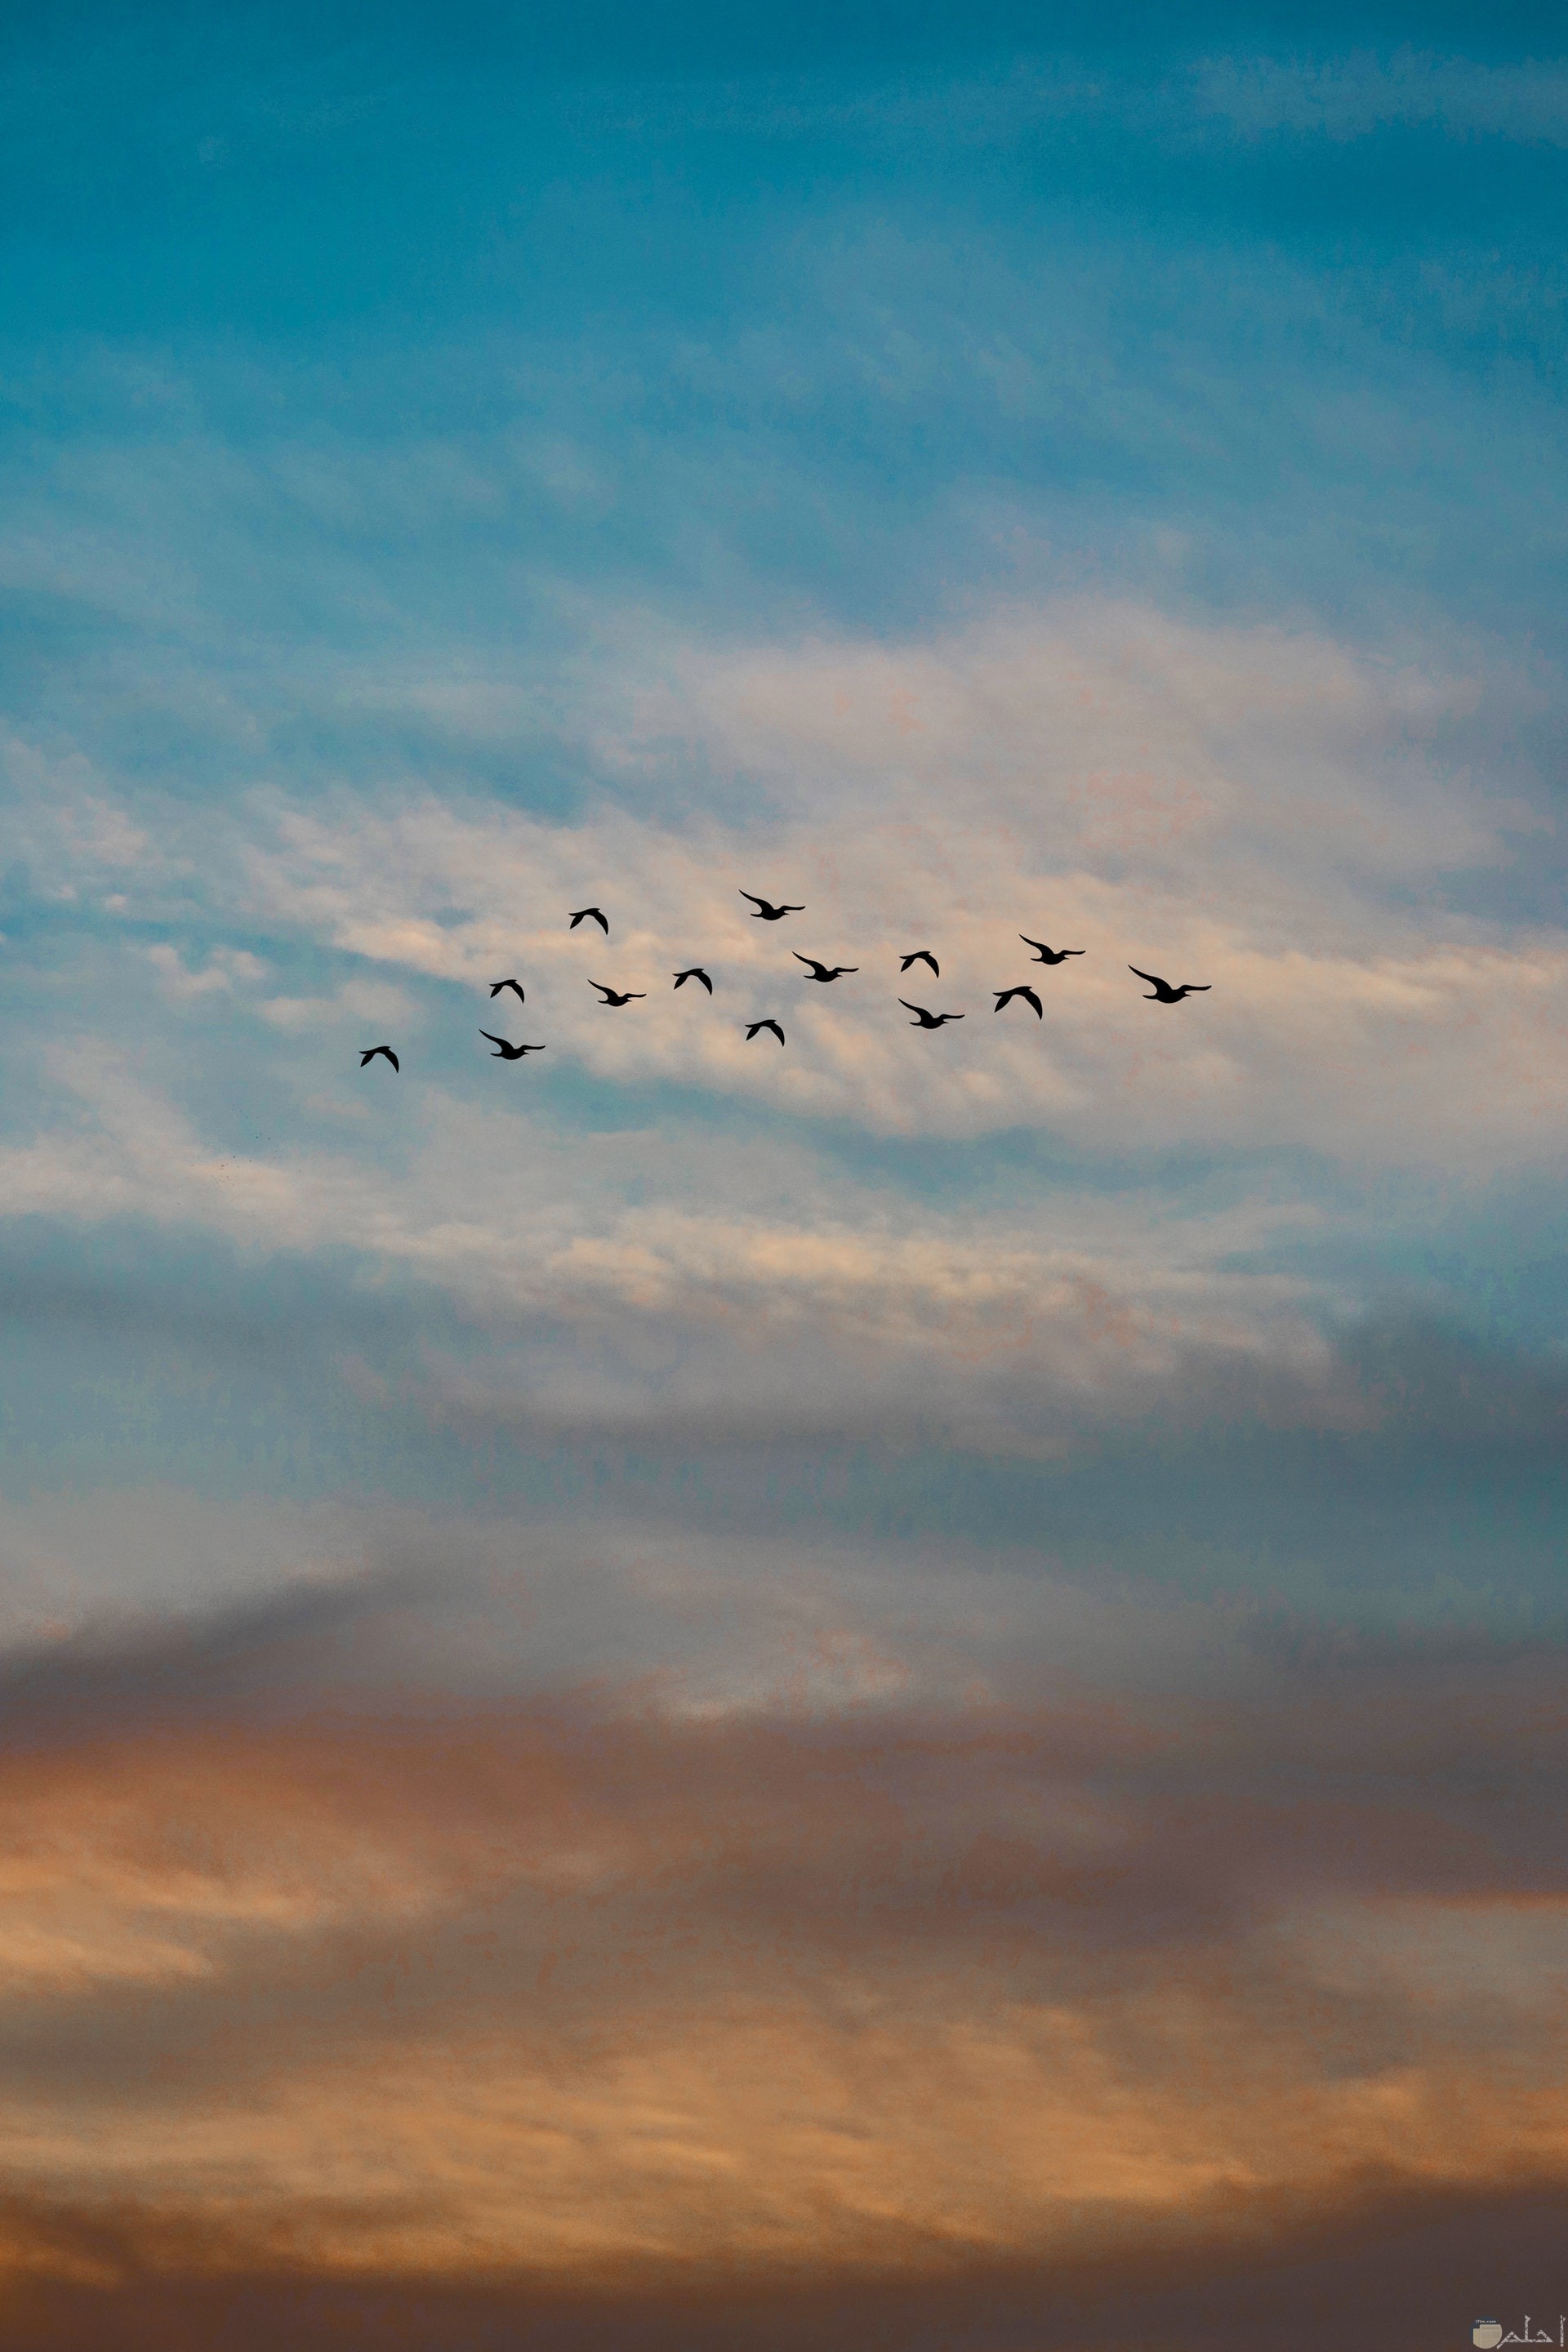 صورة جميلة جدا لمجموعة من الطيور تطير في الهواء في مجموعة وقت الغروب